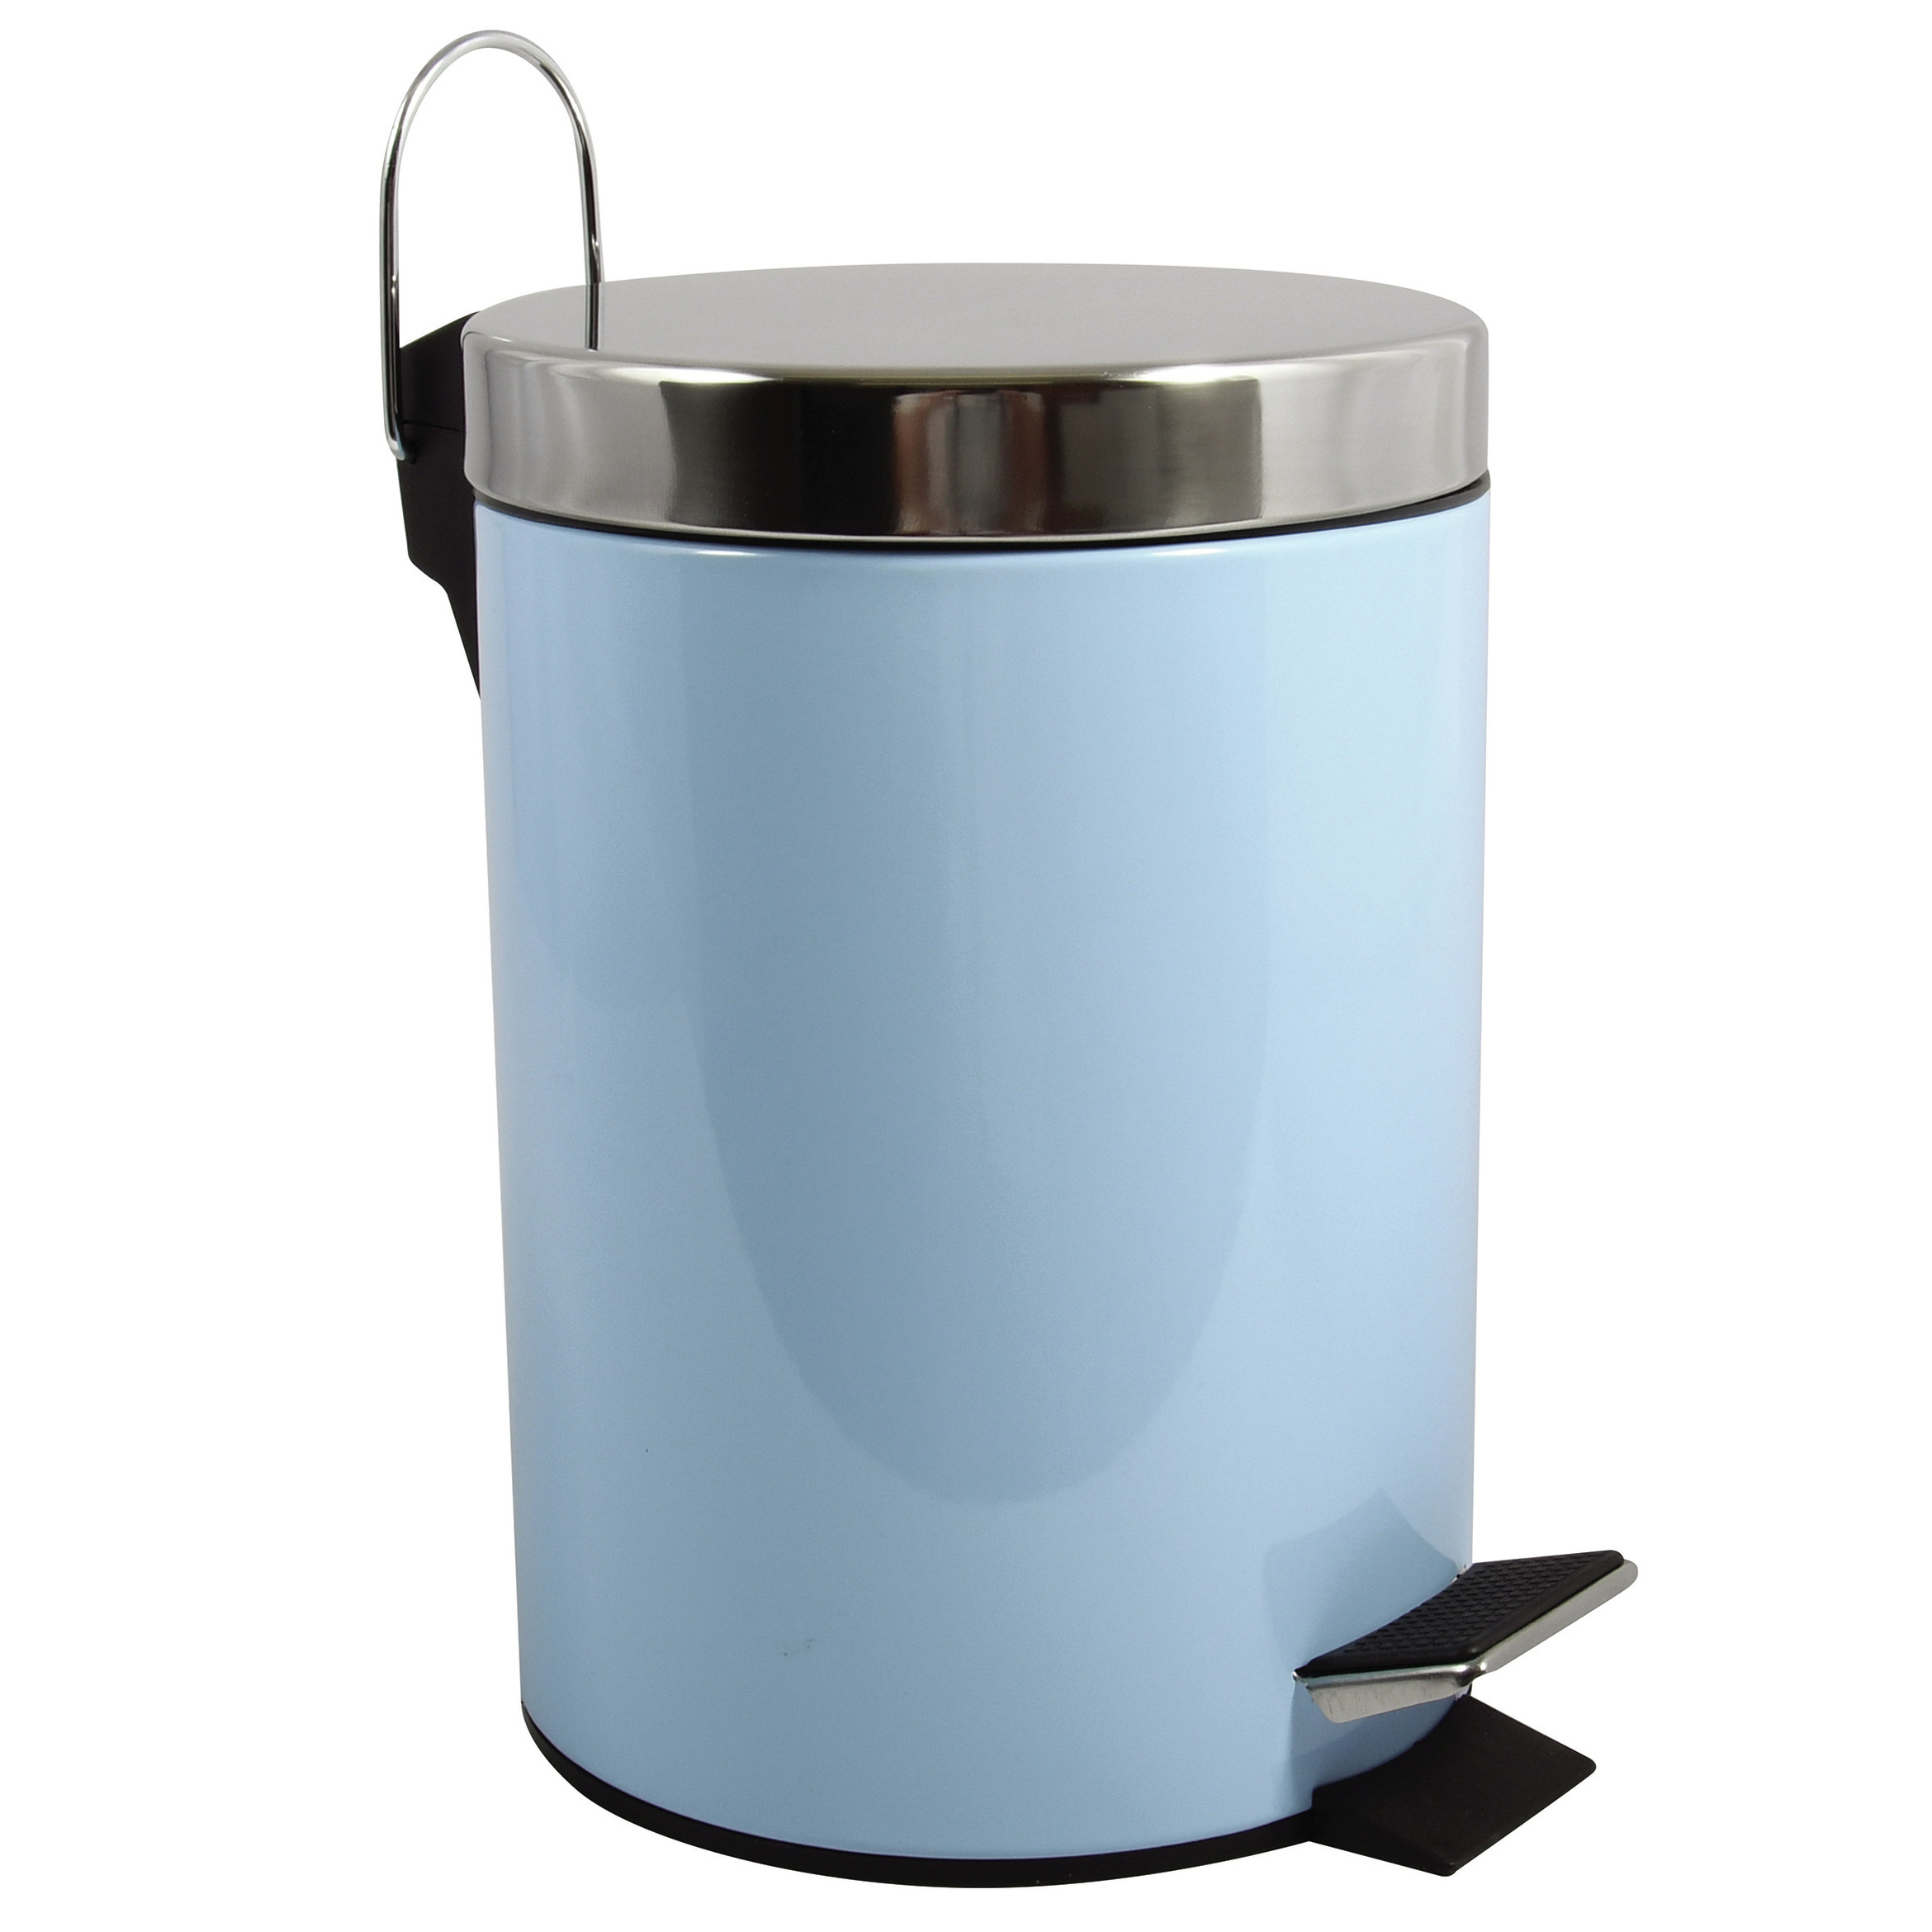 Prullenbak-pedaalemmer metaal pastel blauw 3 liter 17 x 25 cm Badkamer-toilet